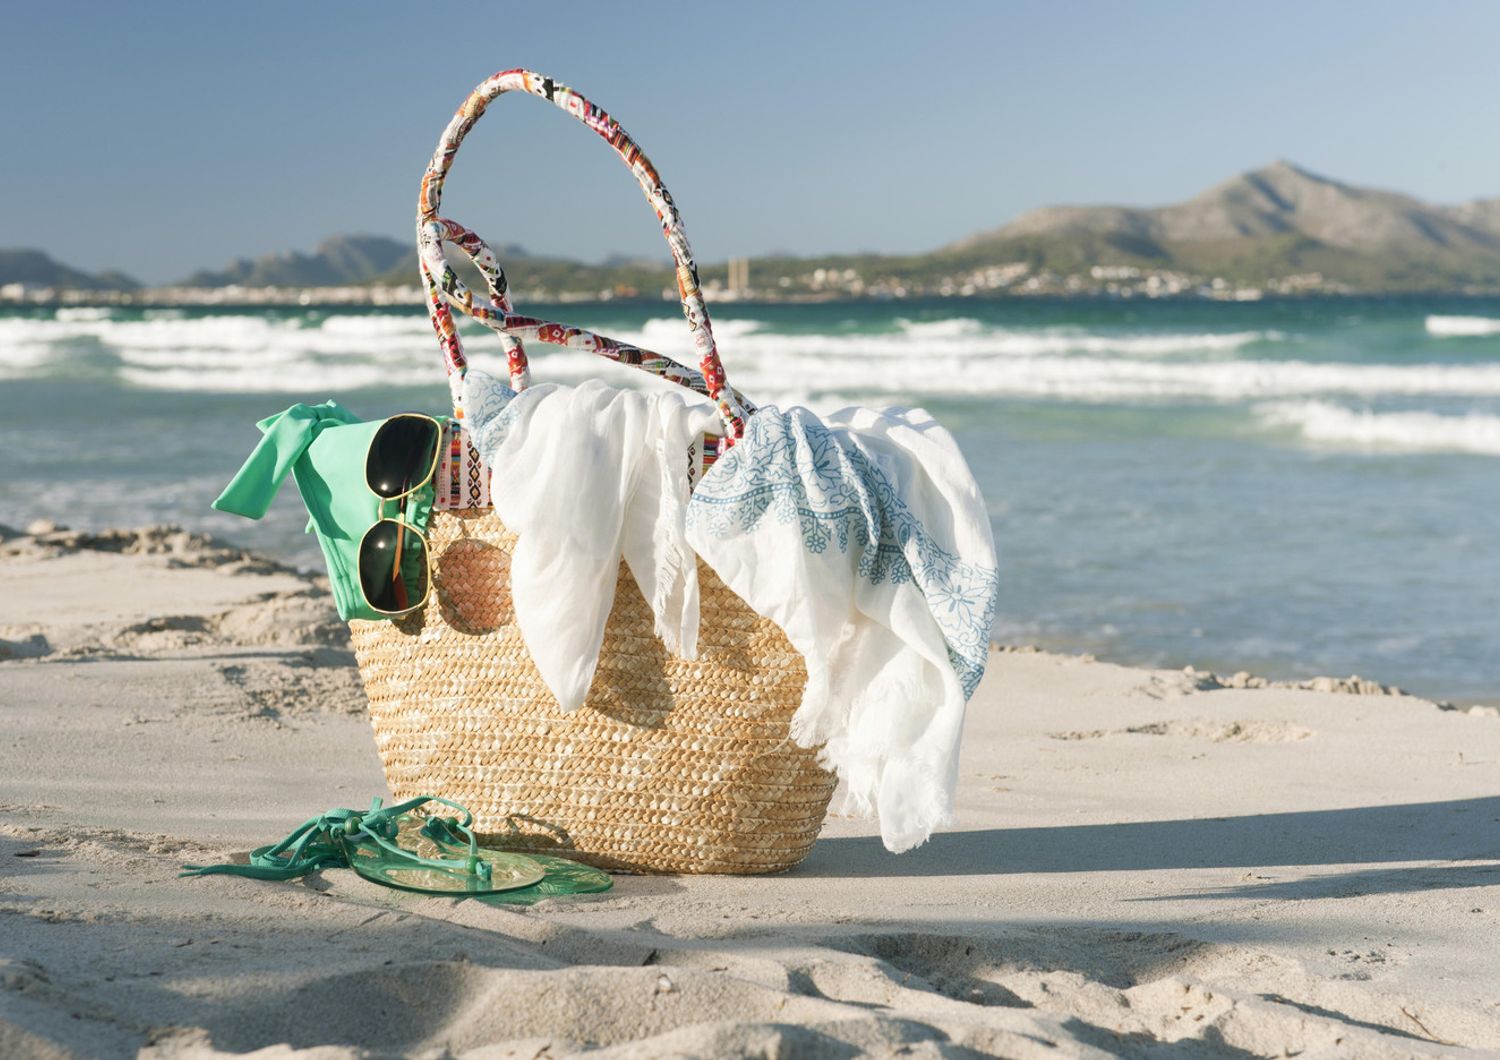 &nbsp;Oggetti persi in spiaggia, effetti personali, mare, vacanza, occhiali, borsa